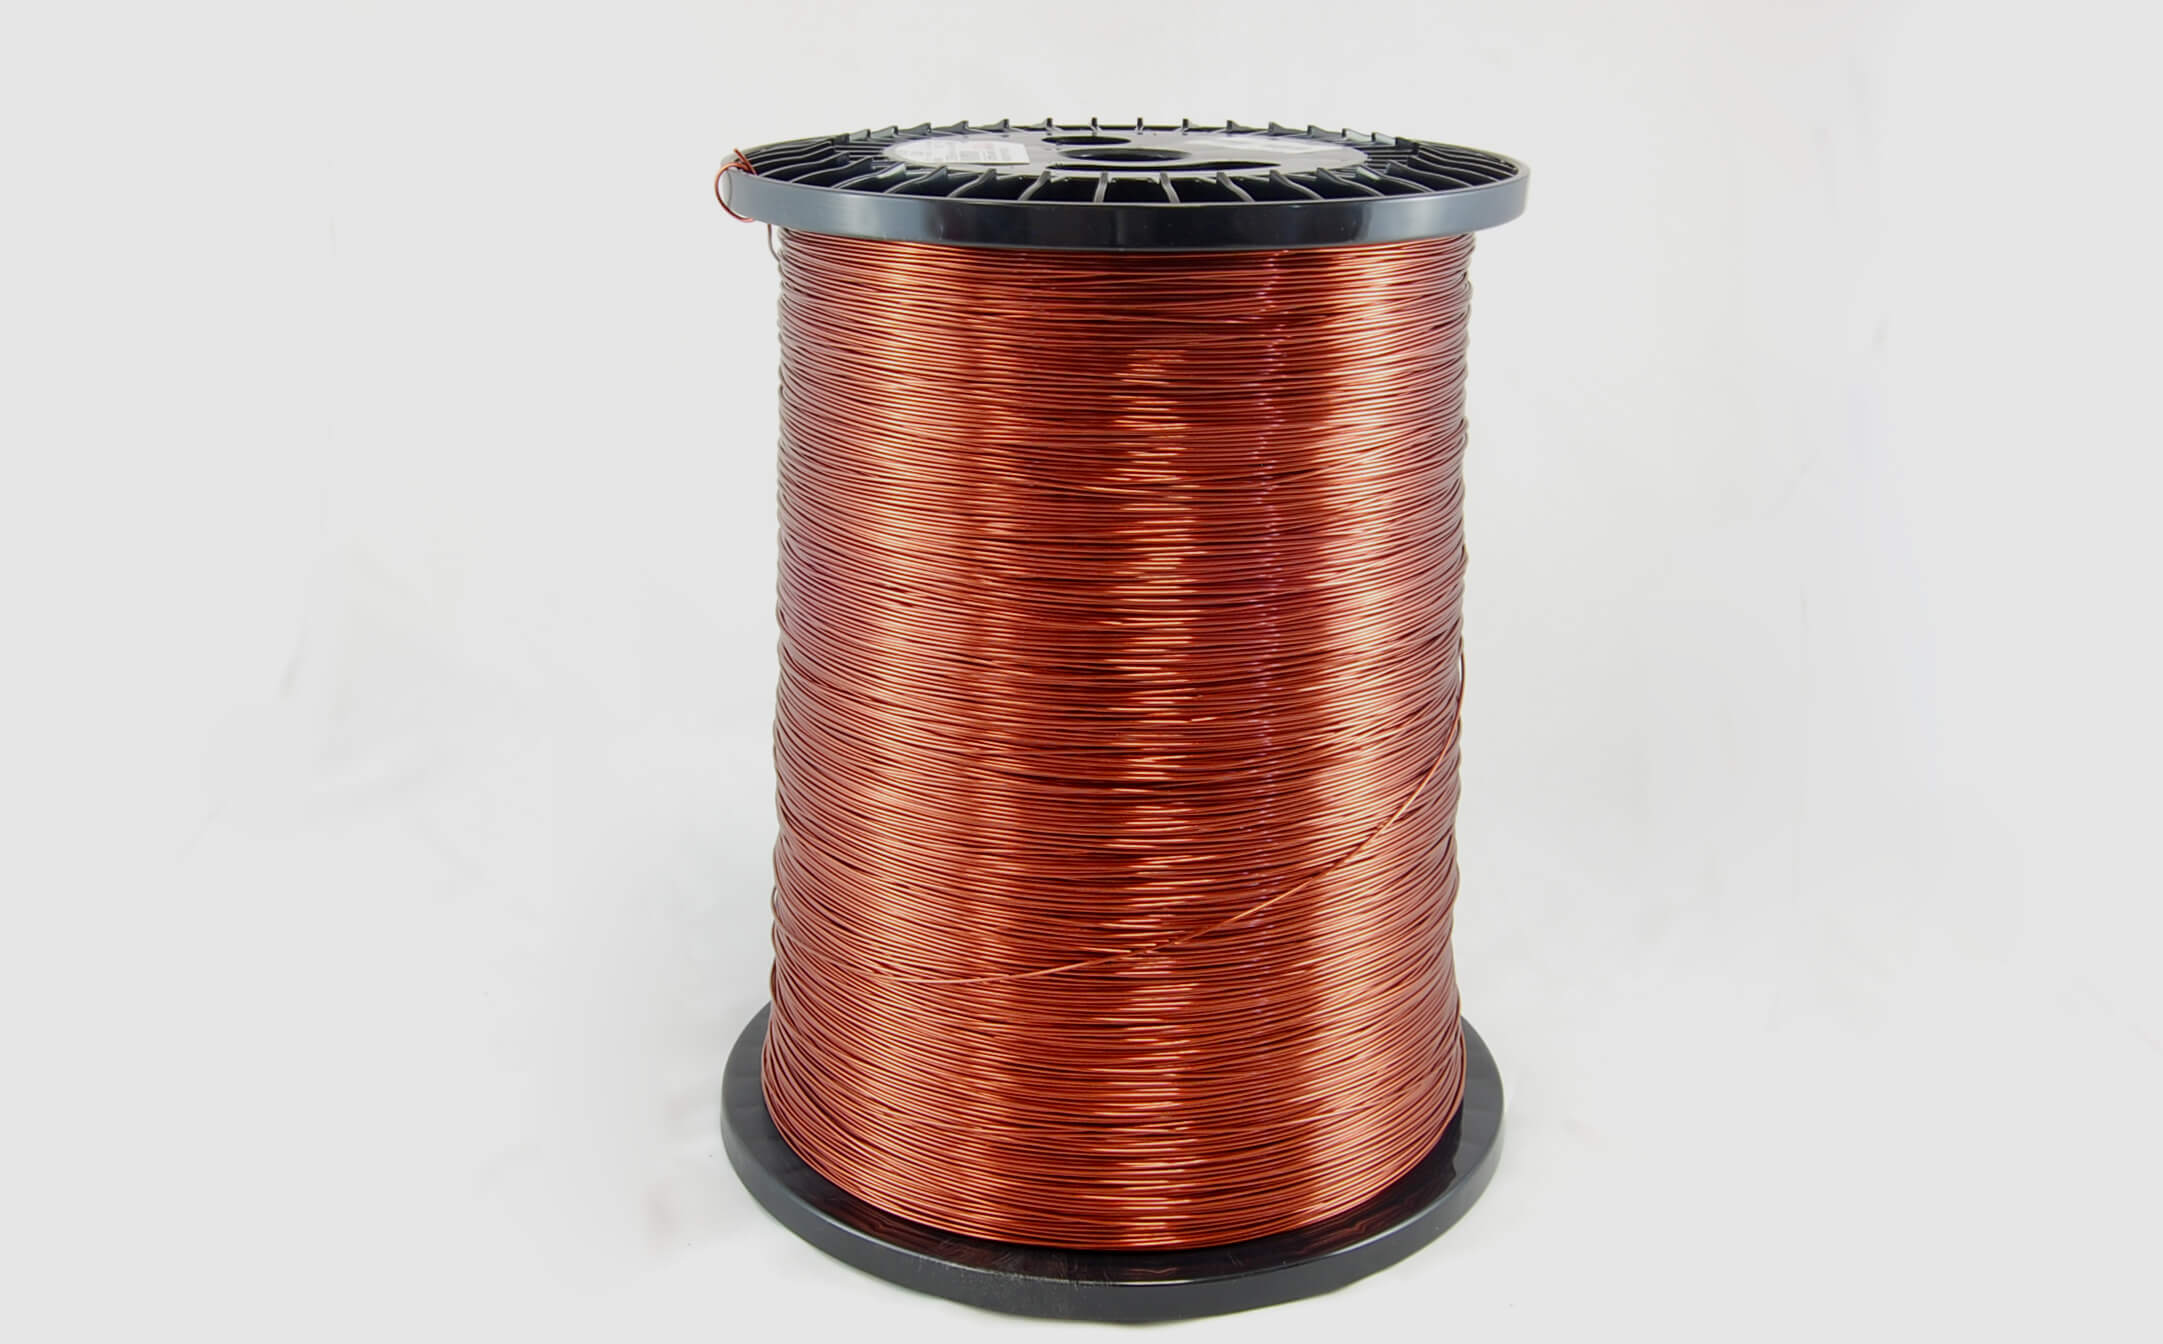 #12 Heavy Super Hyslik 200 Round HTAIH MW 35 Copper Magnet Wire 200°C, copper, 85 LB pail (average wght.)